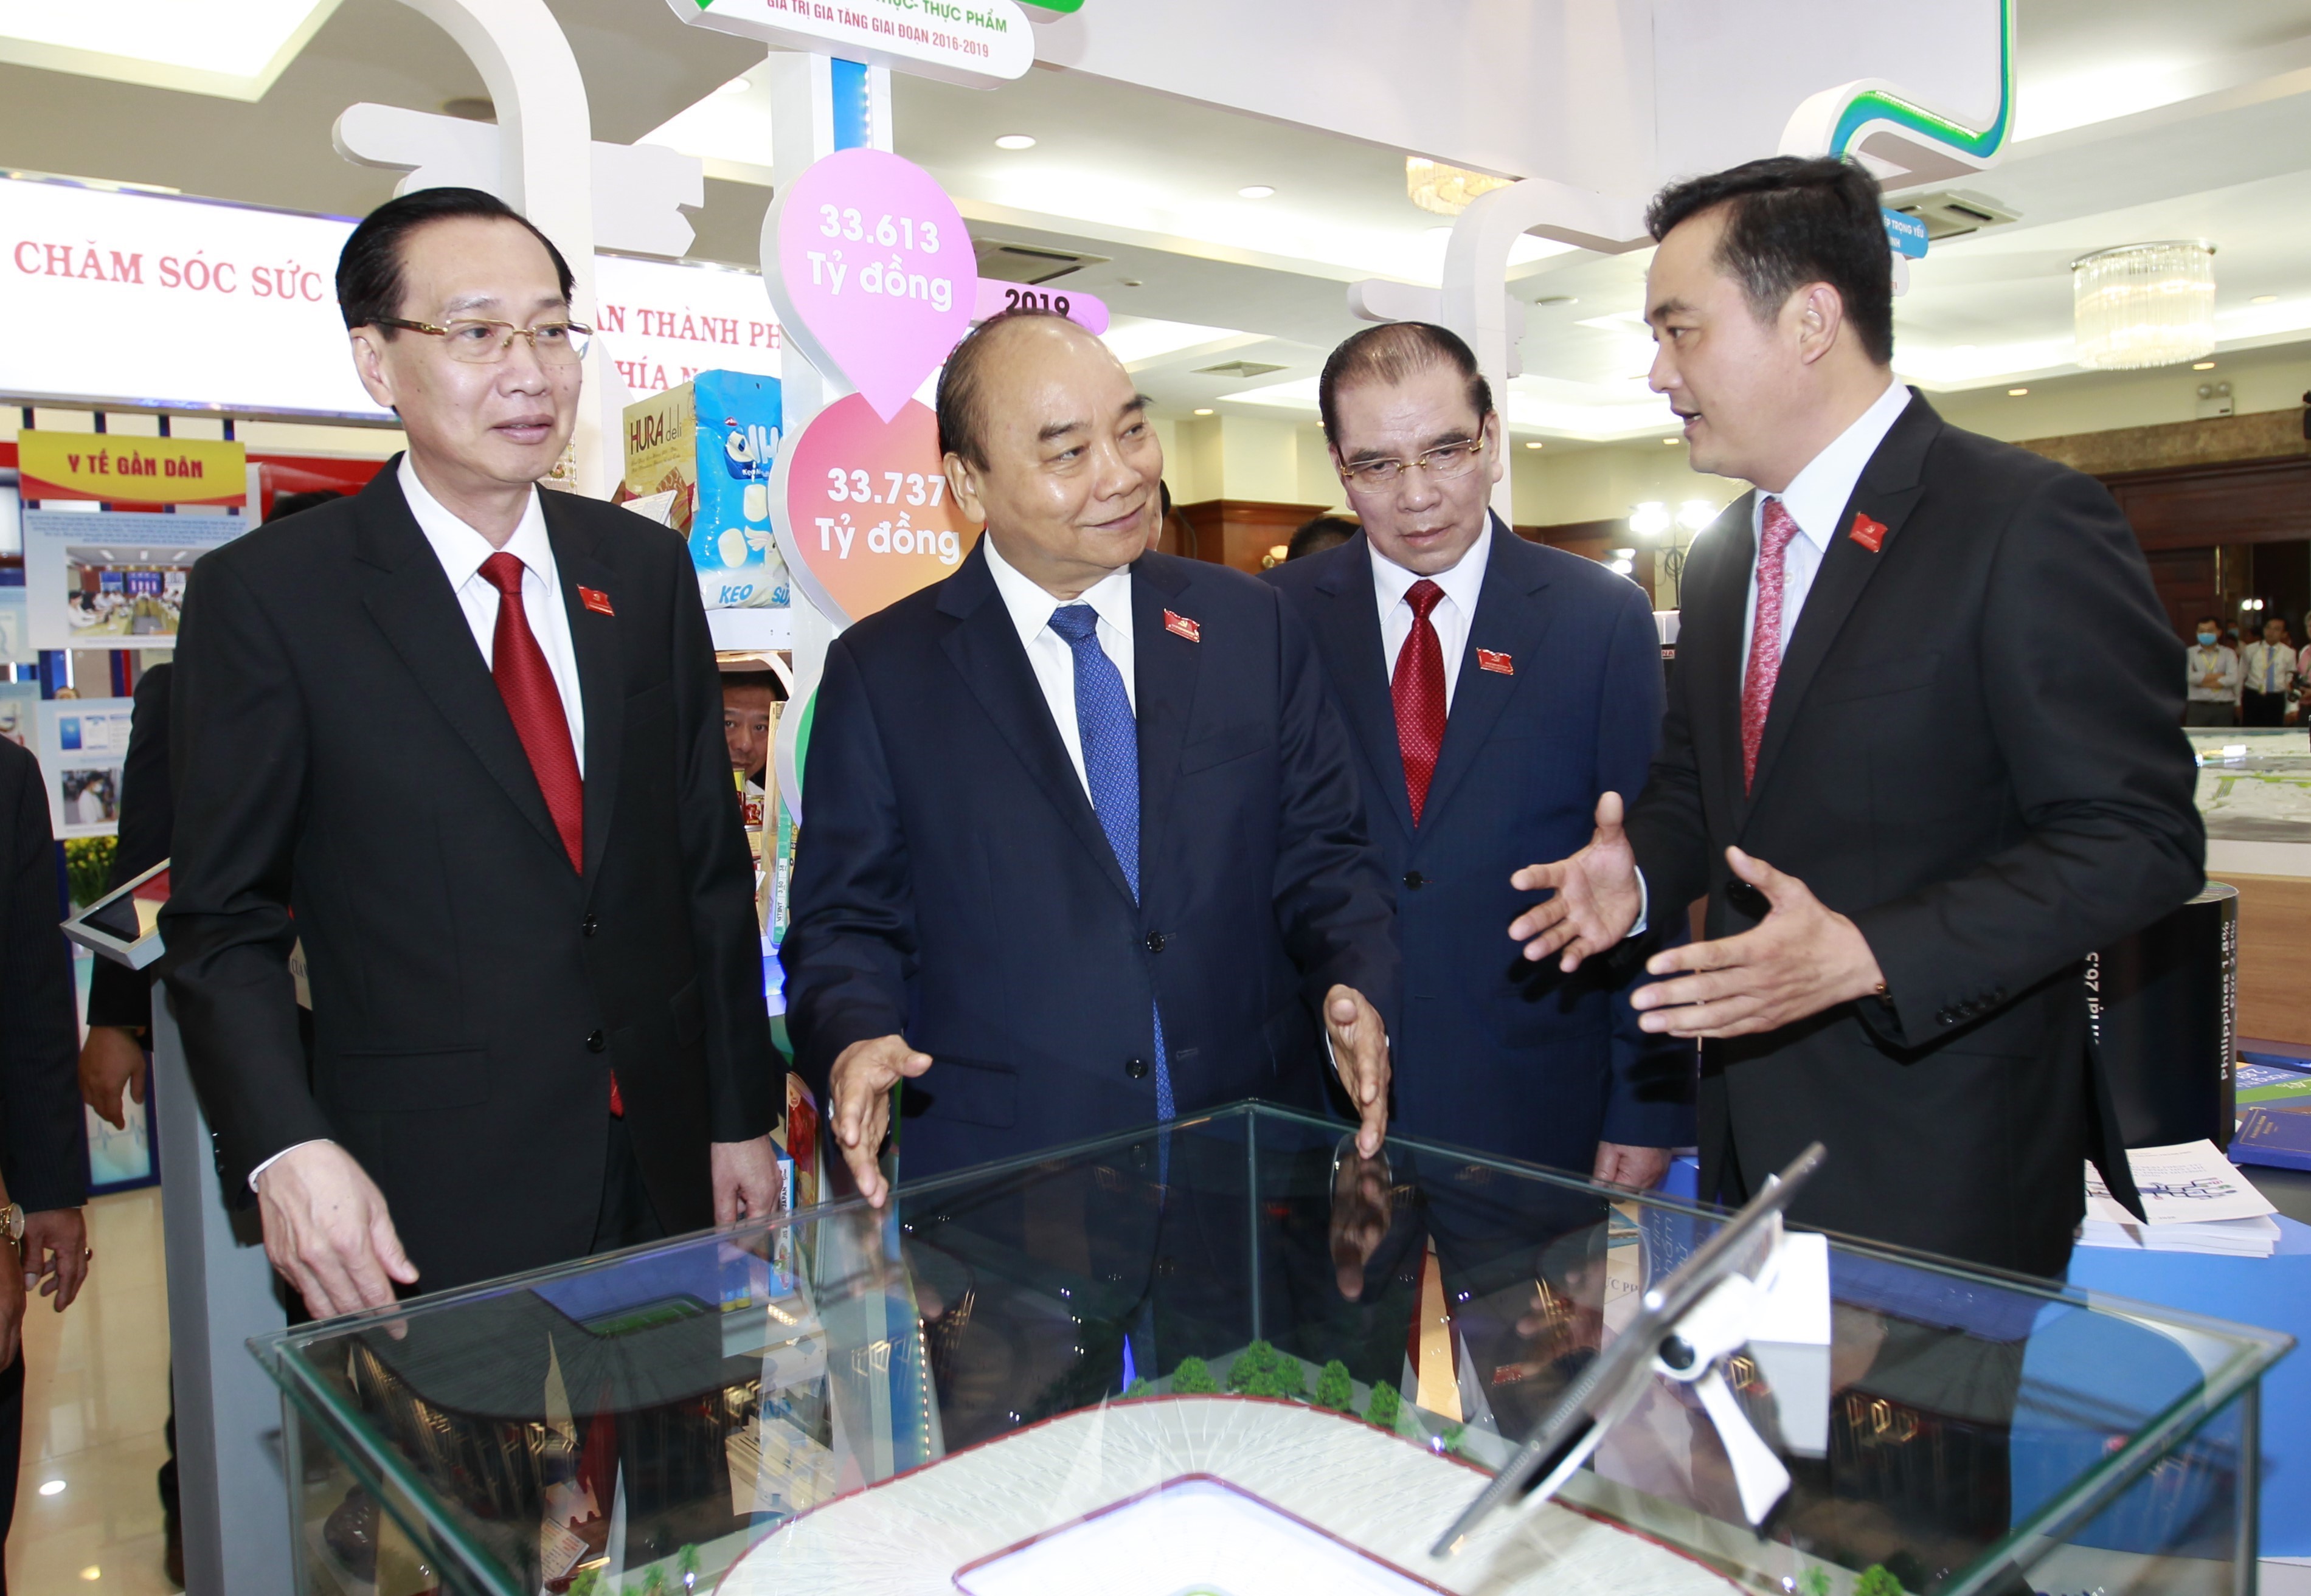 Thủ tướng Nguyễn Xuân Phúc và các đại biểu tham quan Triển lãm các thành tựu phát triển kinh tế - xã hội của TP. Hồ Chí Minh. Ảnh: THANH VŨ